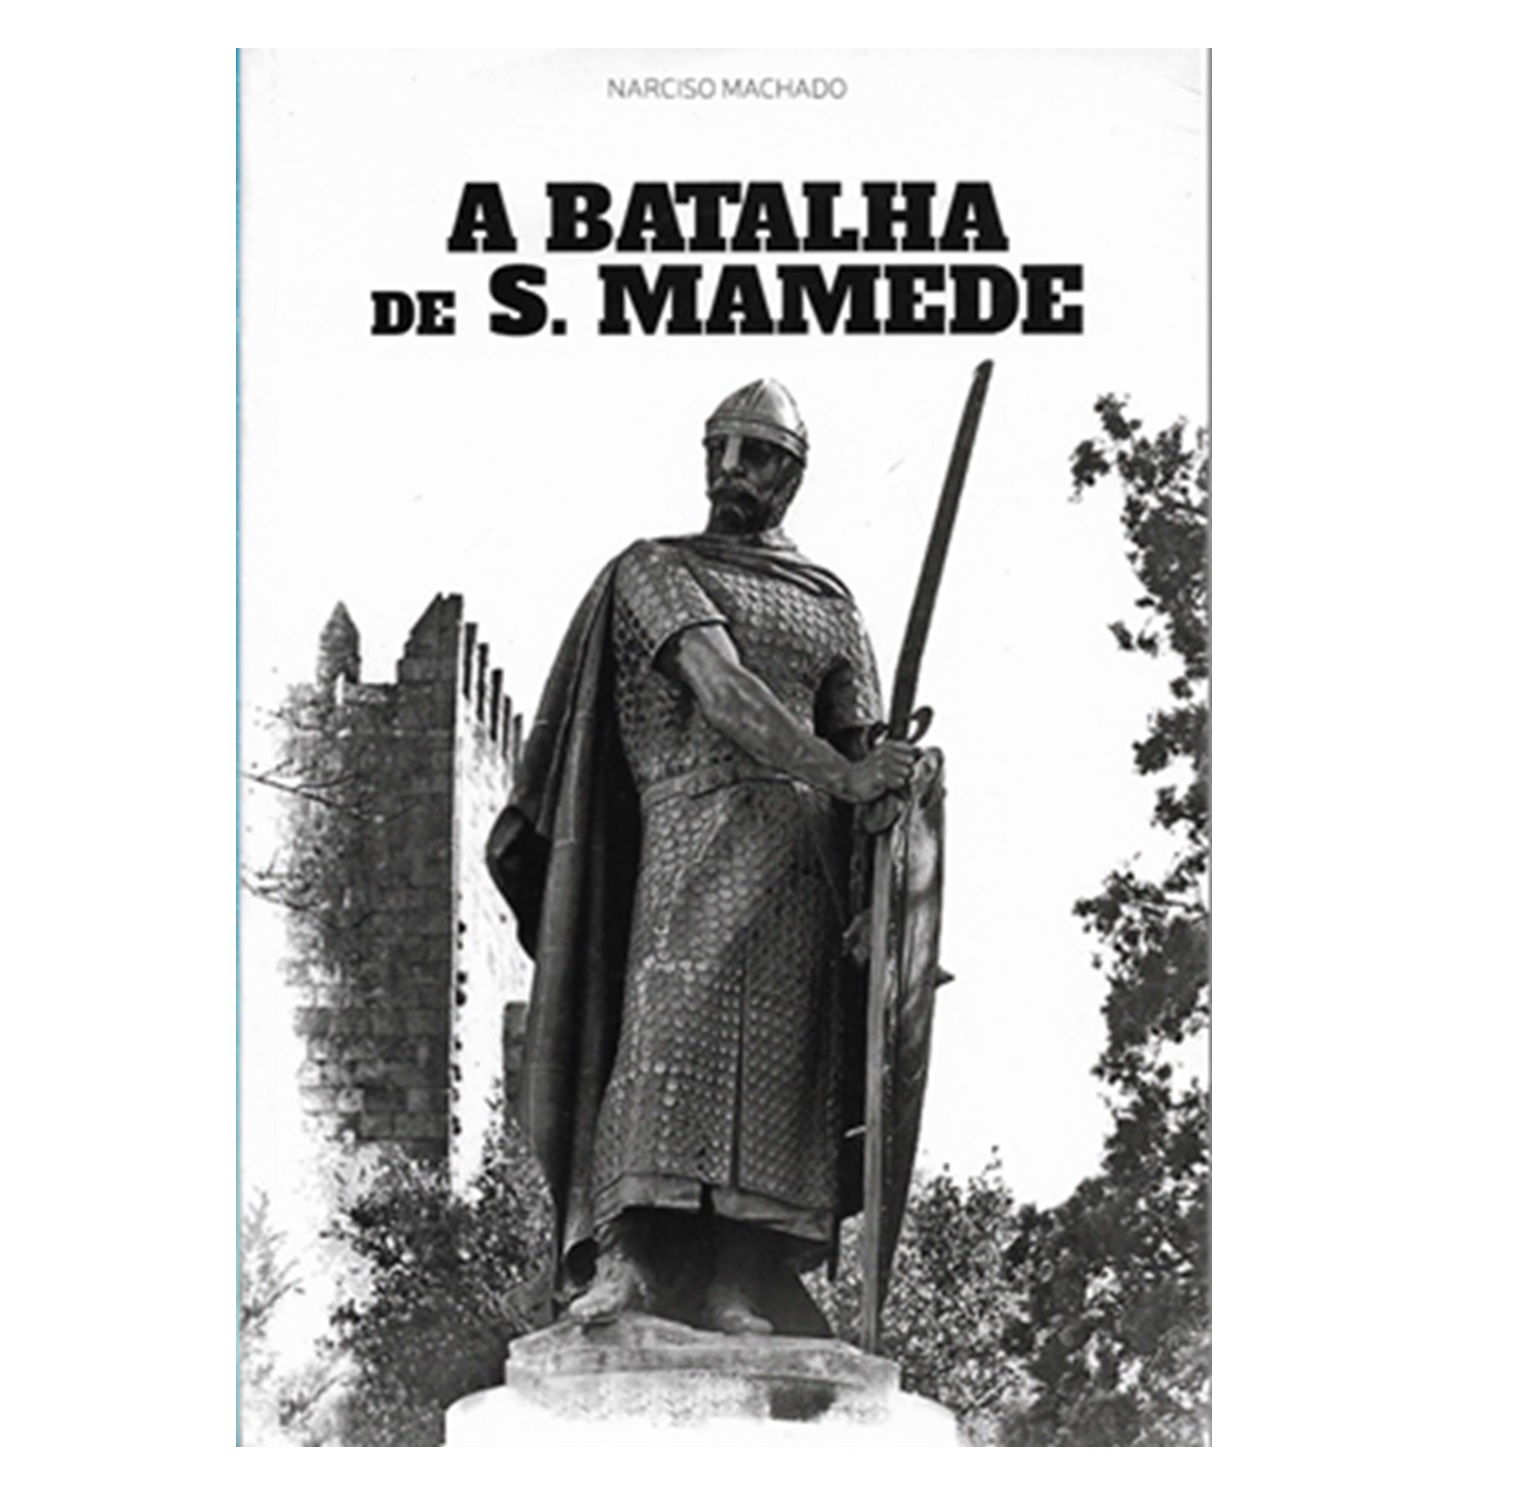 A BATALHA DE S. MAMEDE